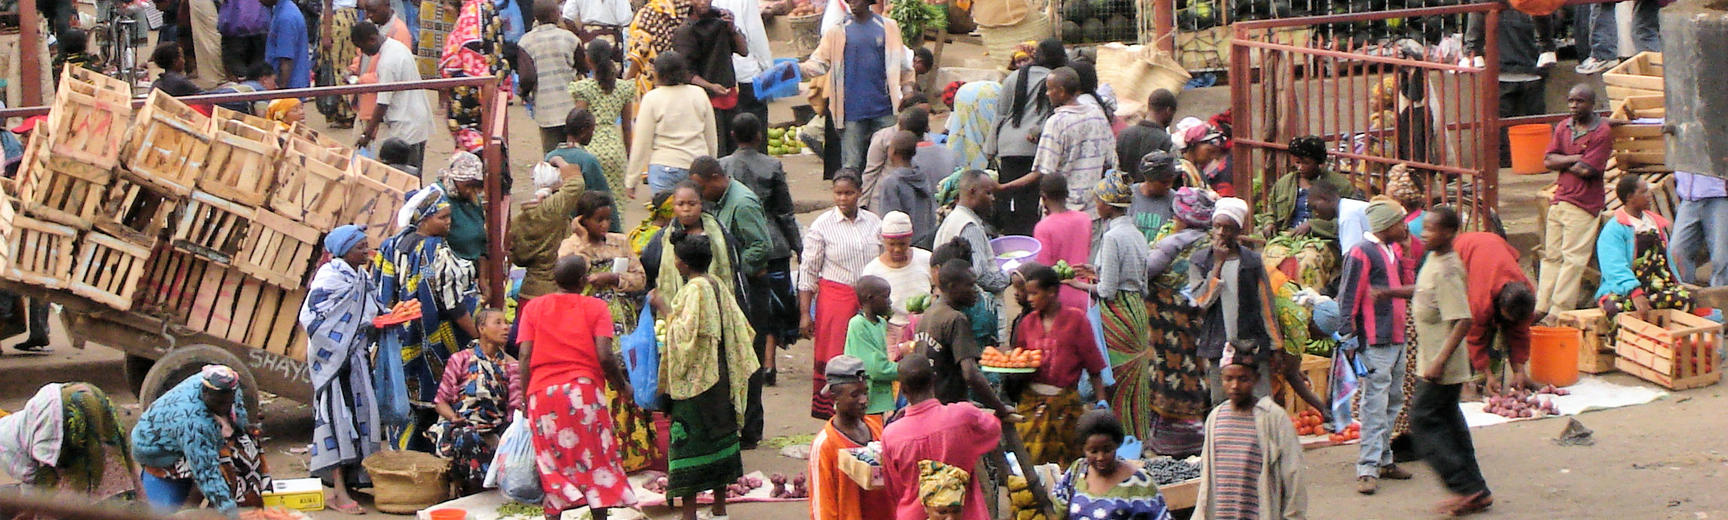 African open-air market